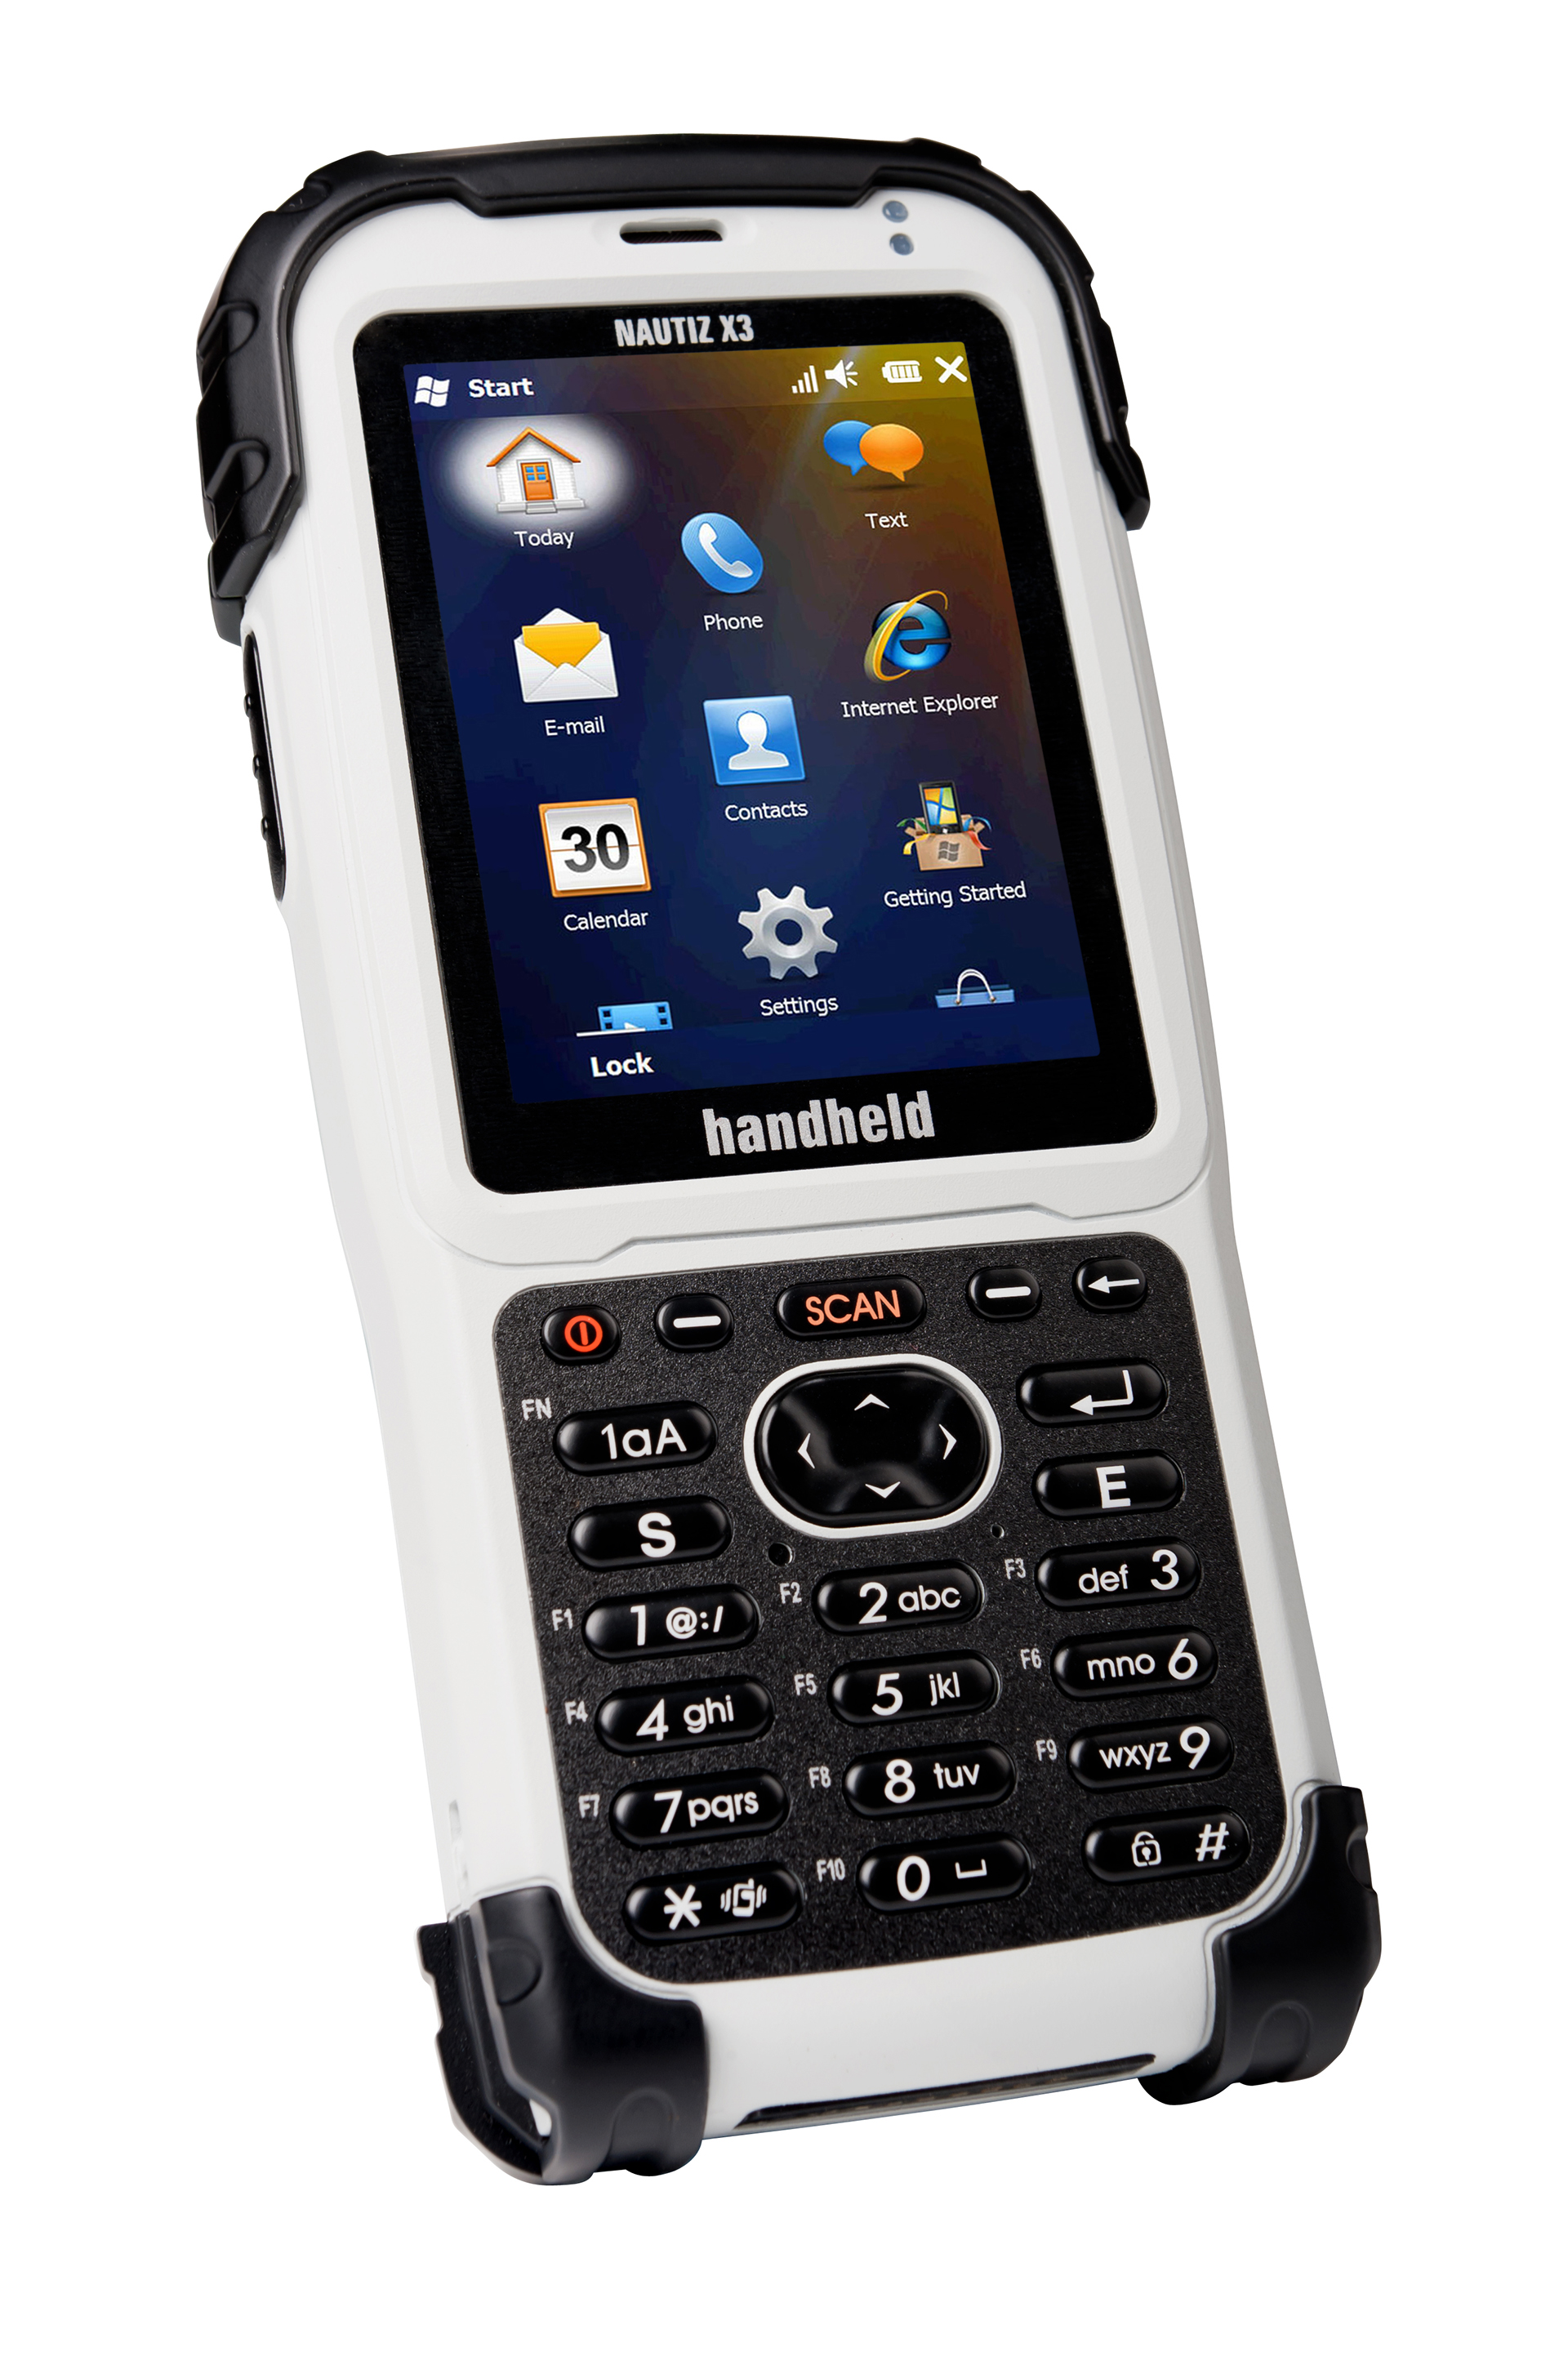 Nautiz-X3-ultra-compact-handheld-IP65-right.jpg